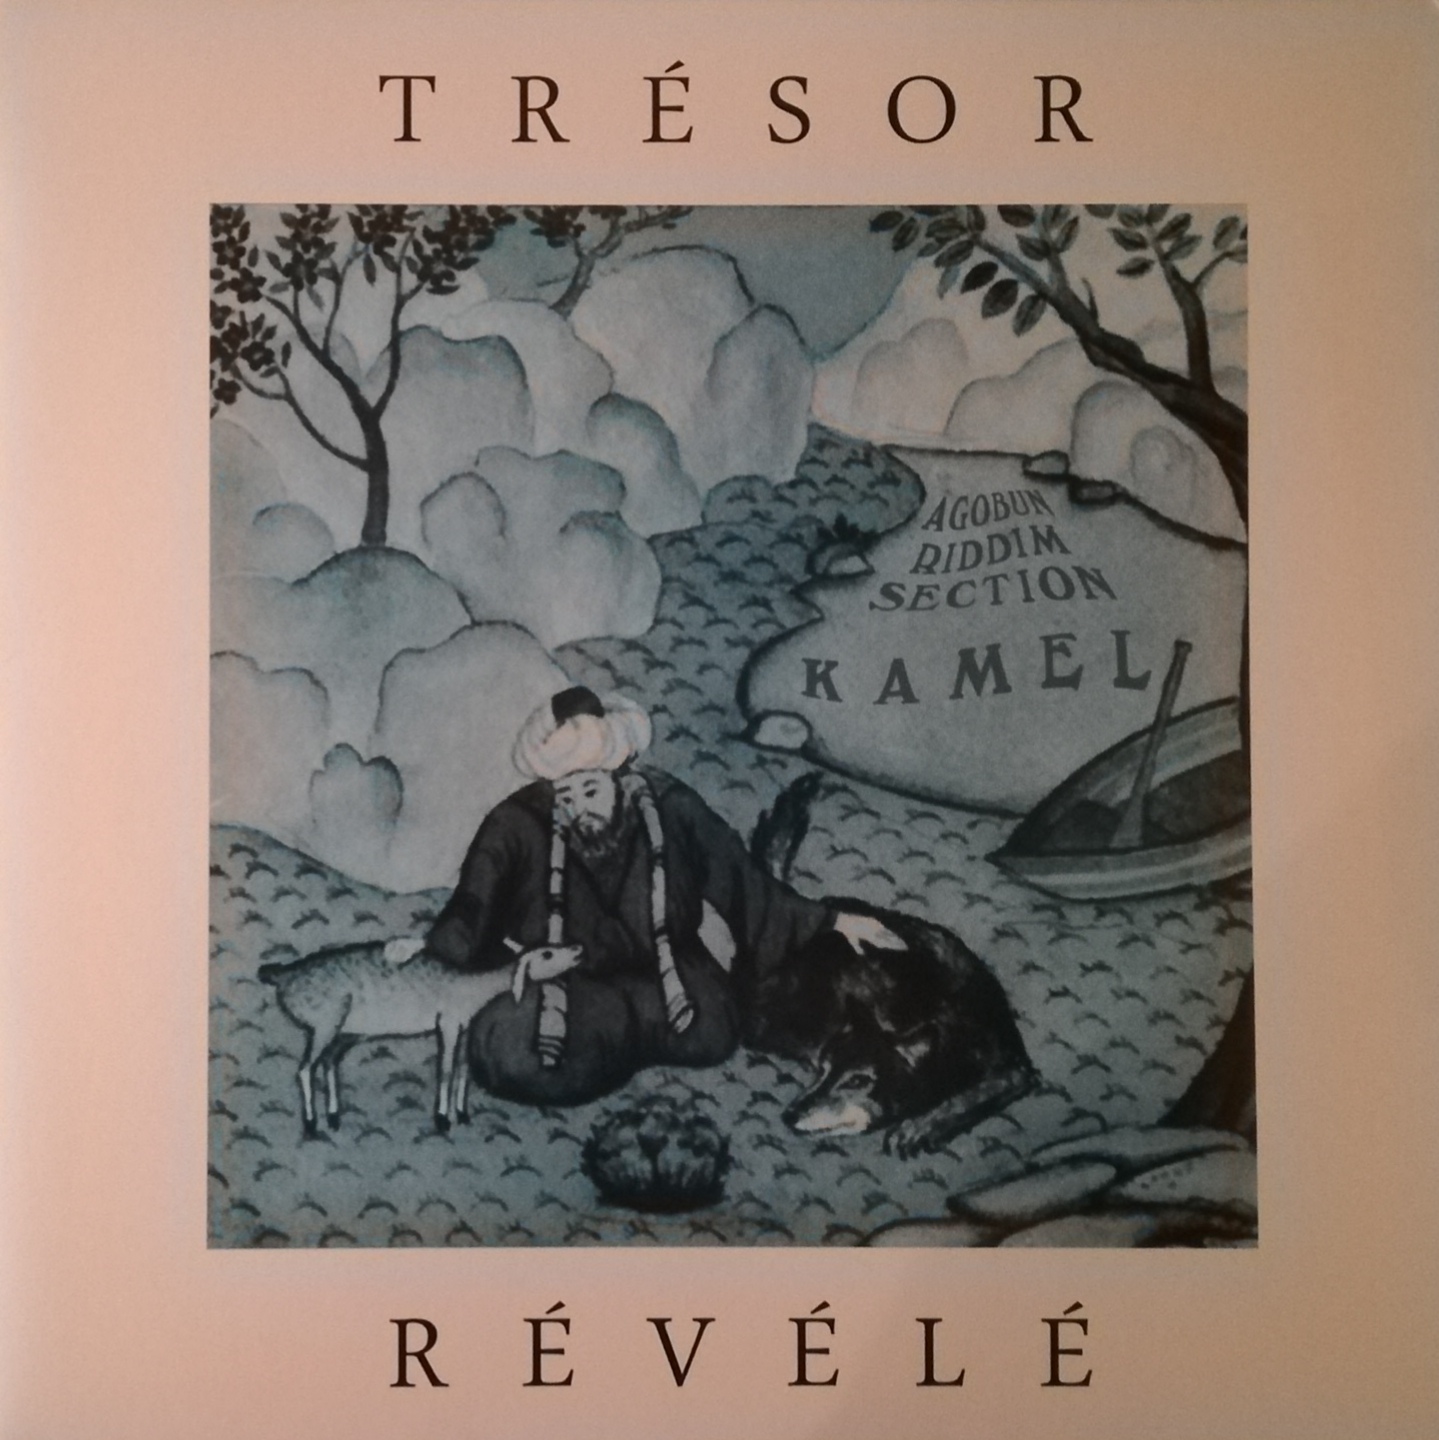 LP TRESOR REVELE - KAMEL & AGOBUN